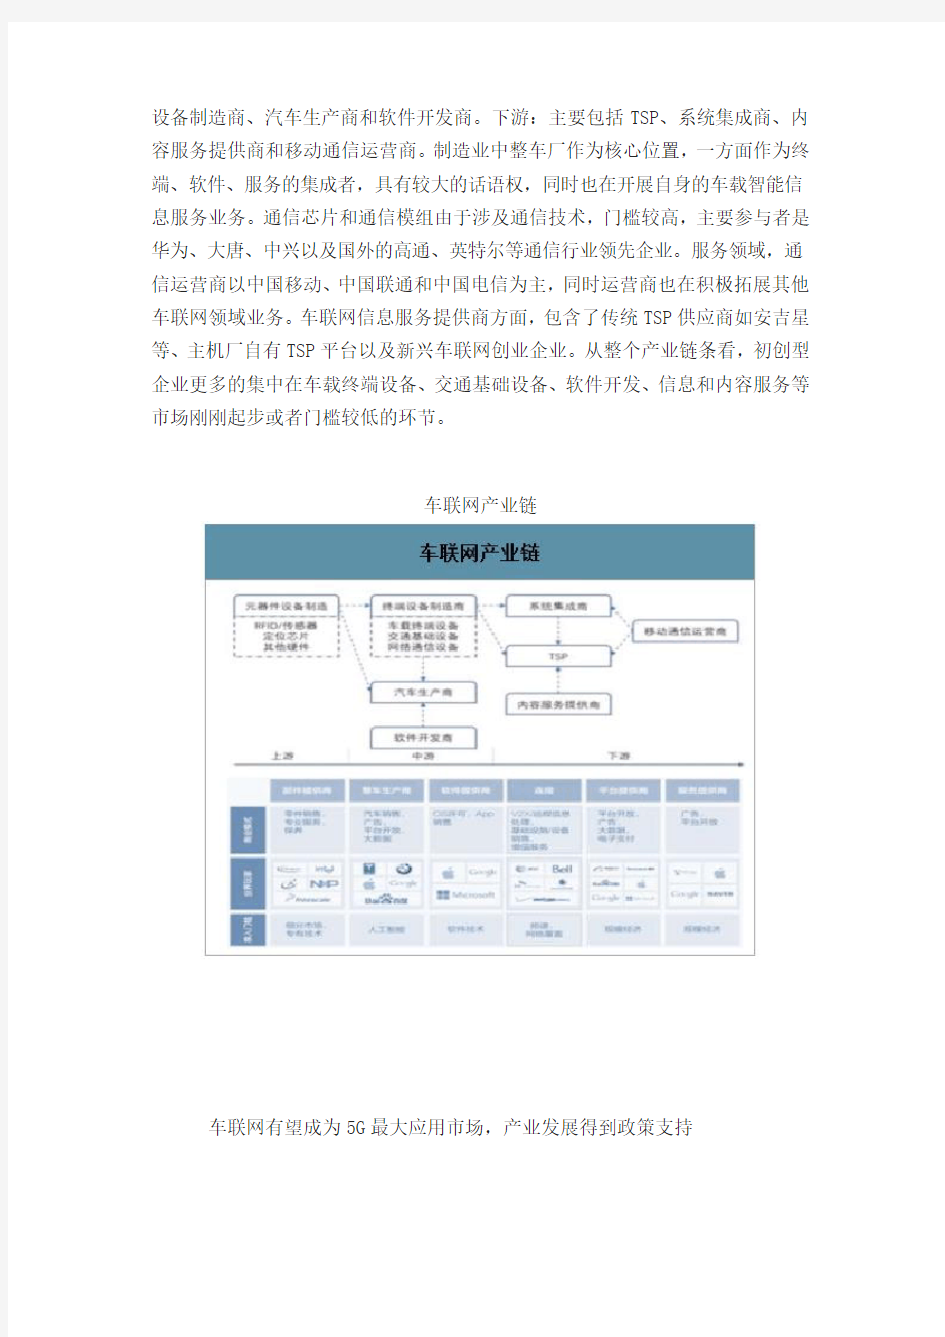 2020年中国车联网行业发展现状及未来发展前景分析